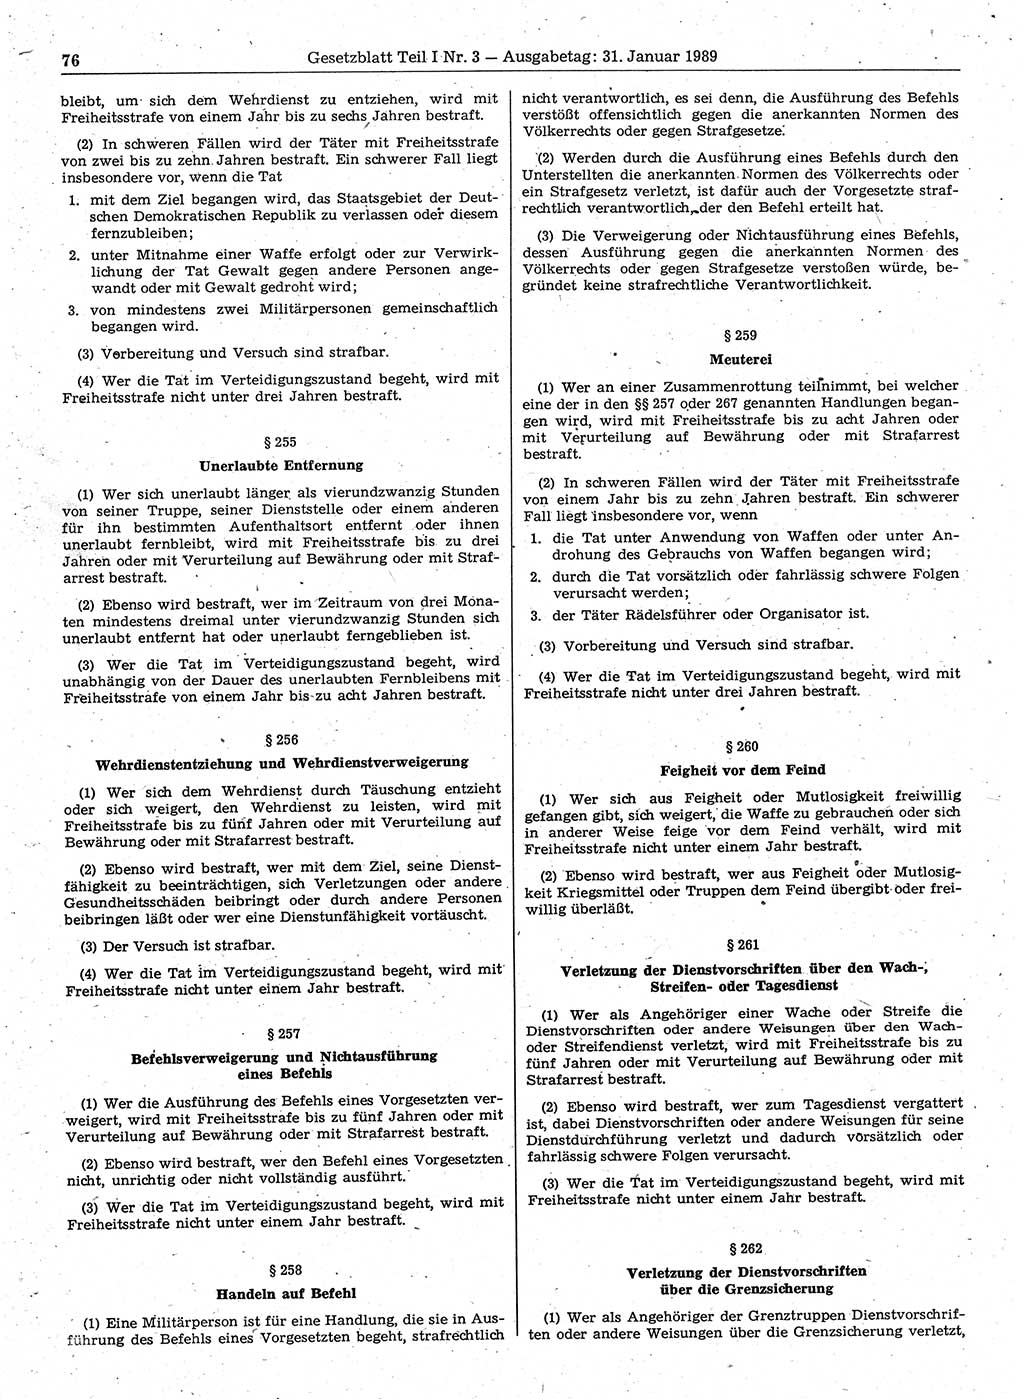 Gesetzblatt (GBl.) der Deutschen Demokratischen Republik (DDR) Teil Ⅰ 1989, Seite 76 (GBl. DDR Ⅰ 1989, S. 76)